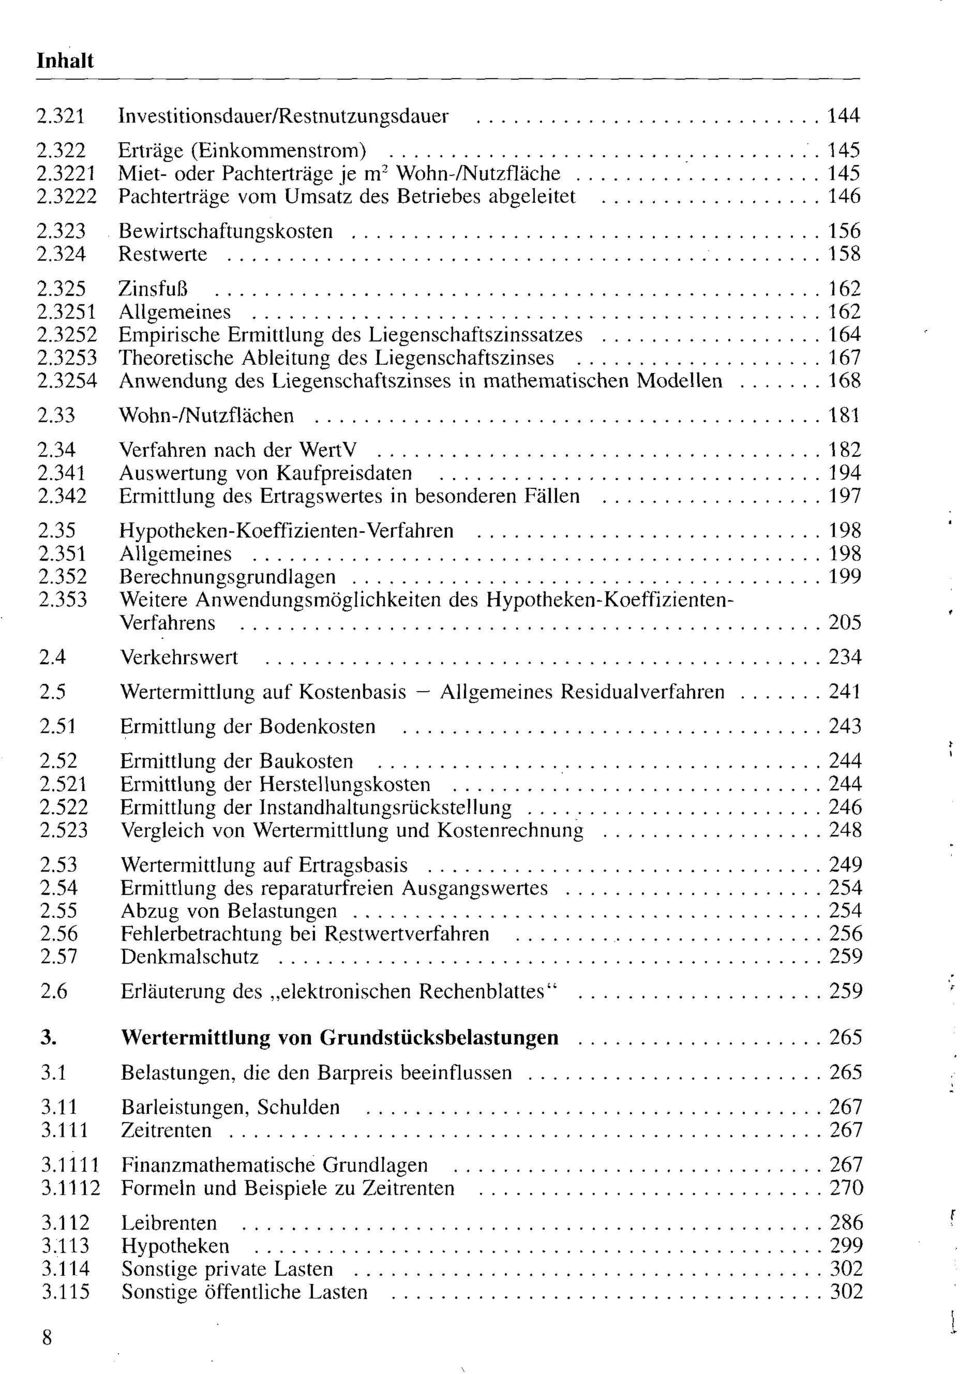 3252 Empirische Ermittlung des Liegenschaftszinssatzes 164 2.3253 Theoretische Ableitung des Liegenschaftszinses 167 2.3254 Anwendung des Liegenschaftszinses in mathematischen Modellen 168 2.